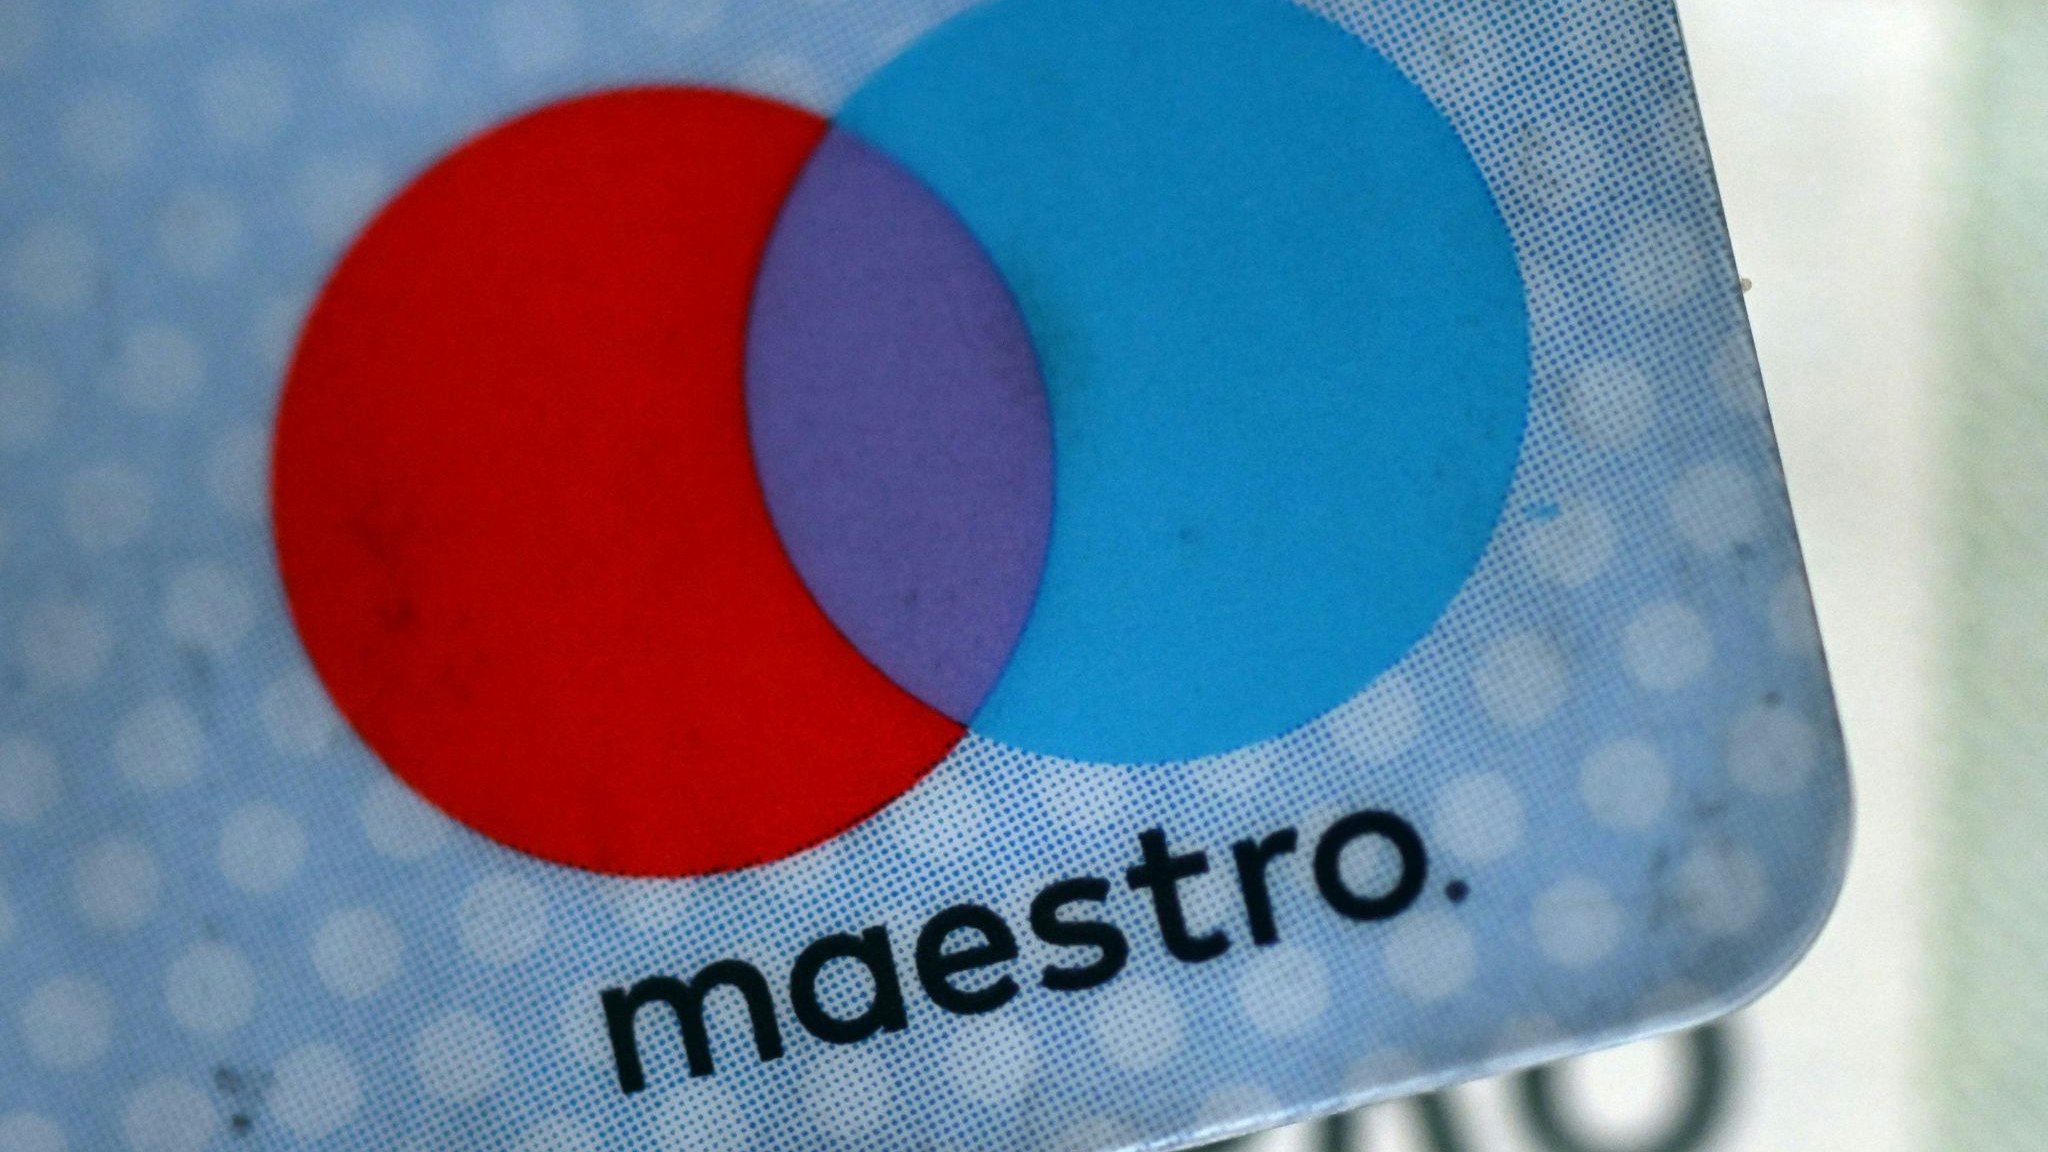 Die Maestro-Funktion von Girokarten ist künftig nicht mehr verfügbar. Foto: dpa/Gambarini